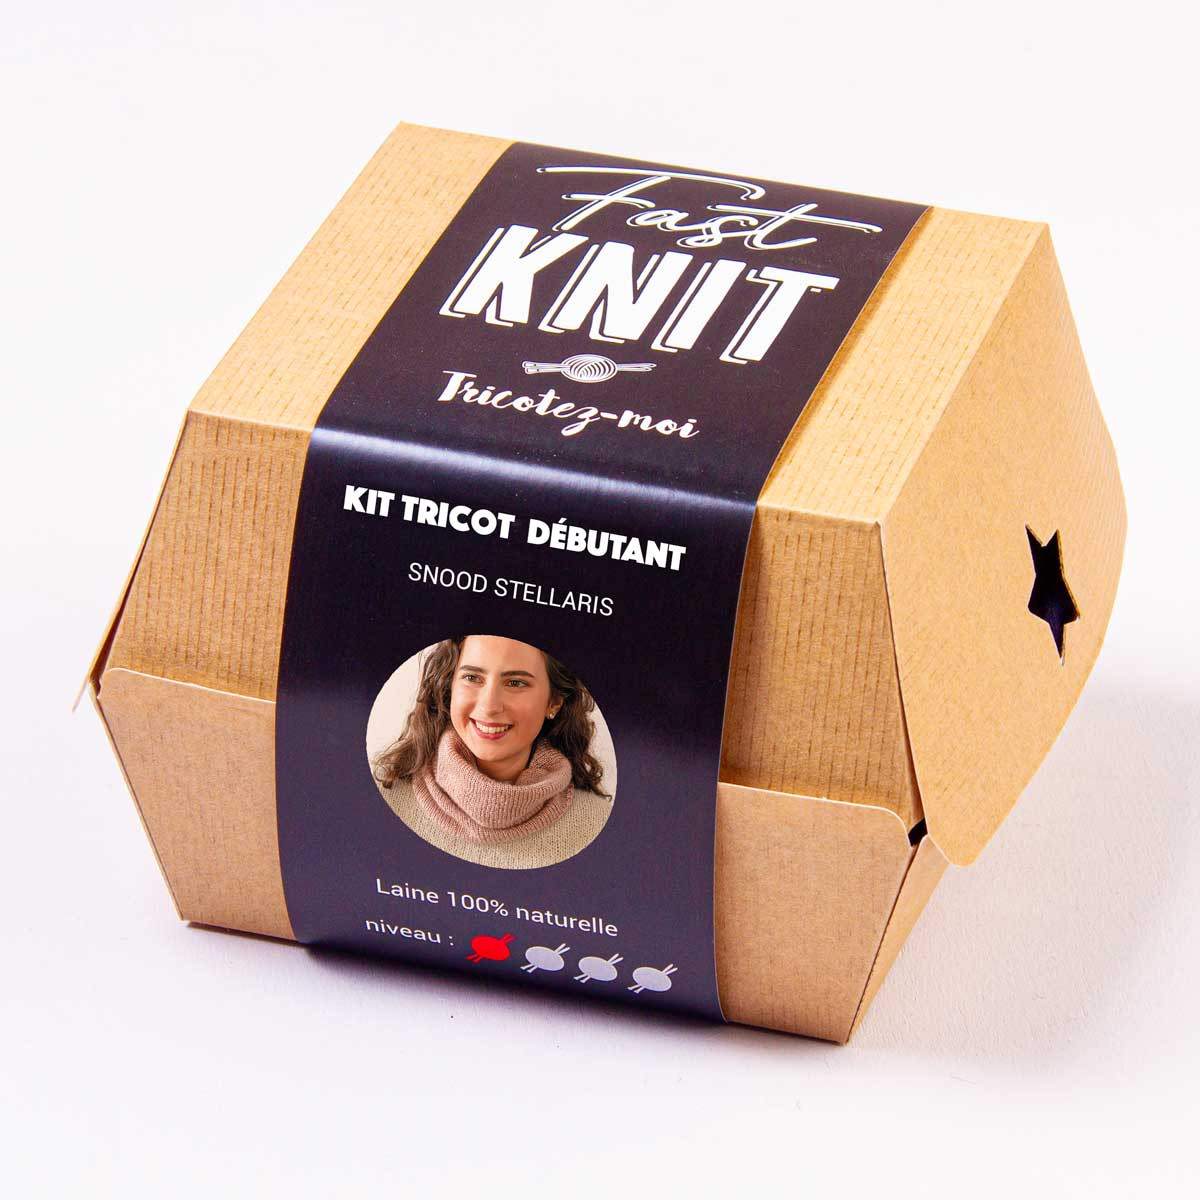 Box to knit